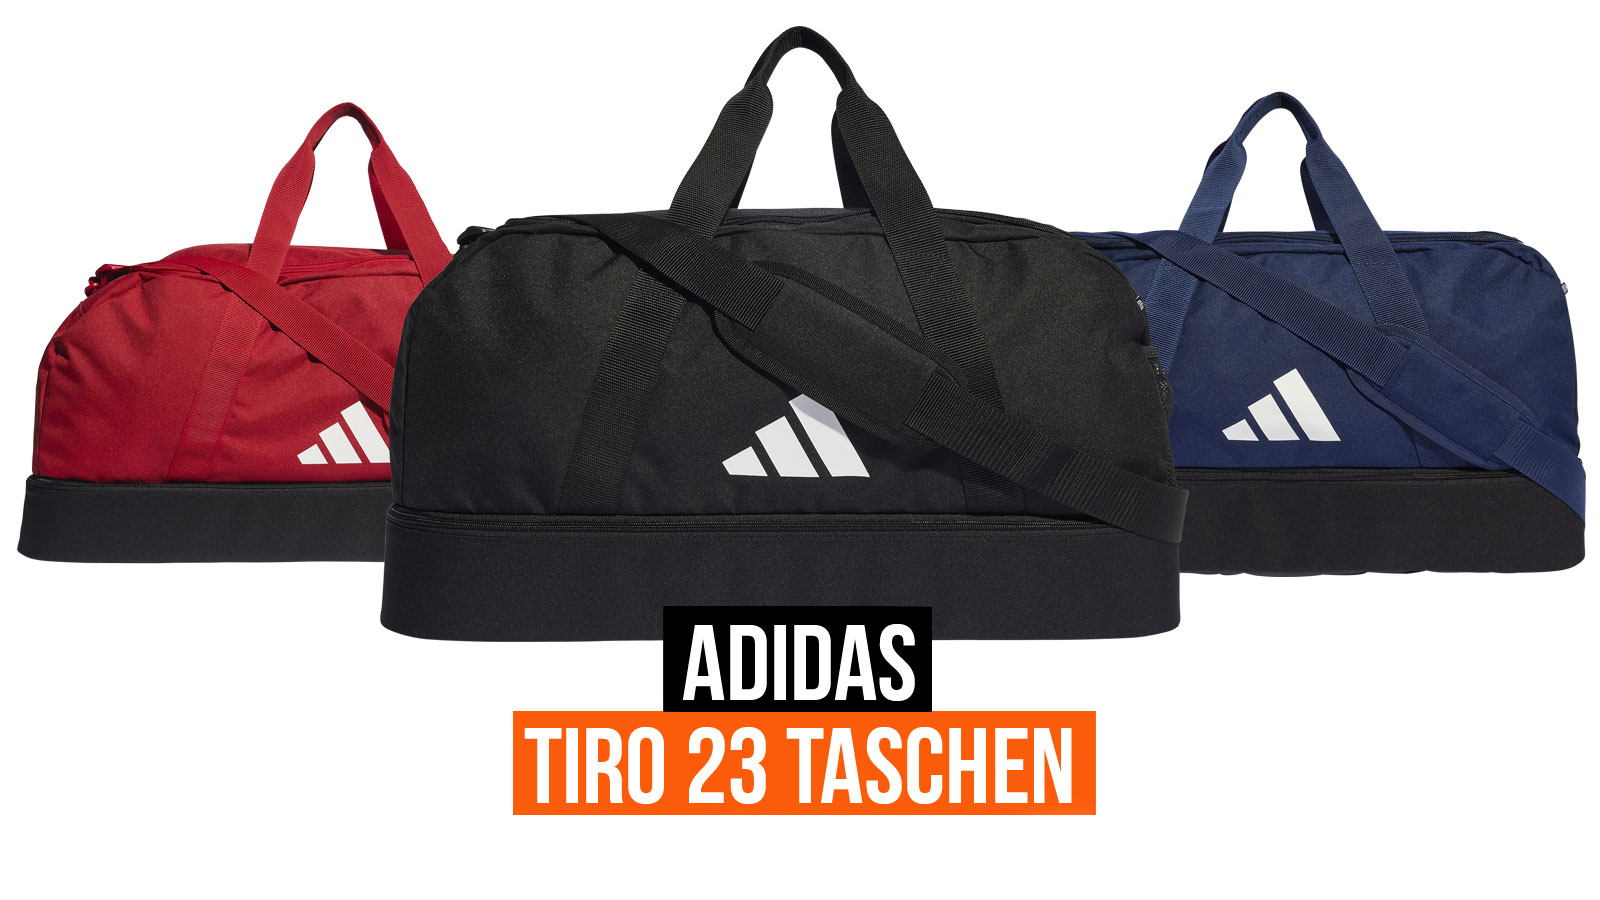 Die adidas Tiro 23 Taschen als Teambags für 2023